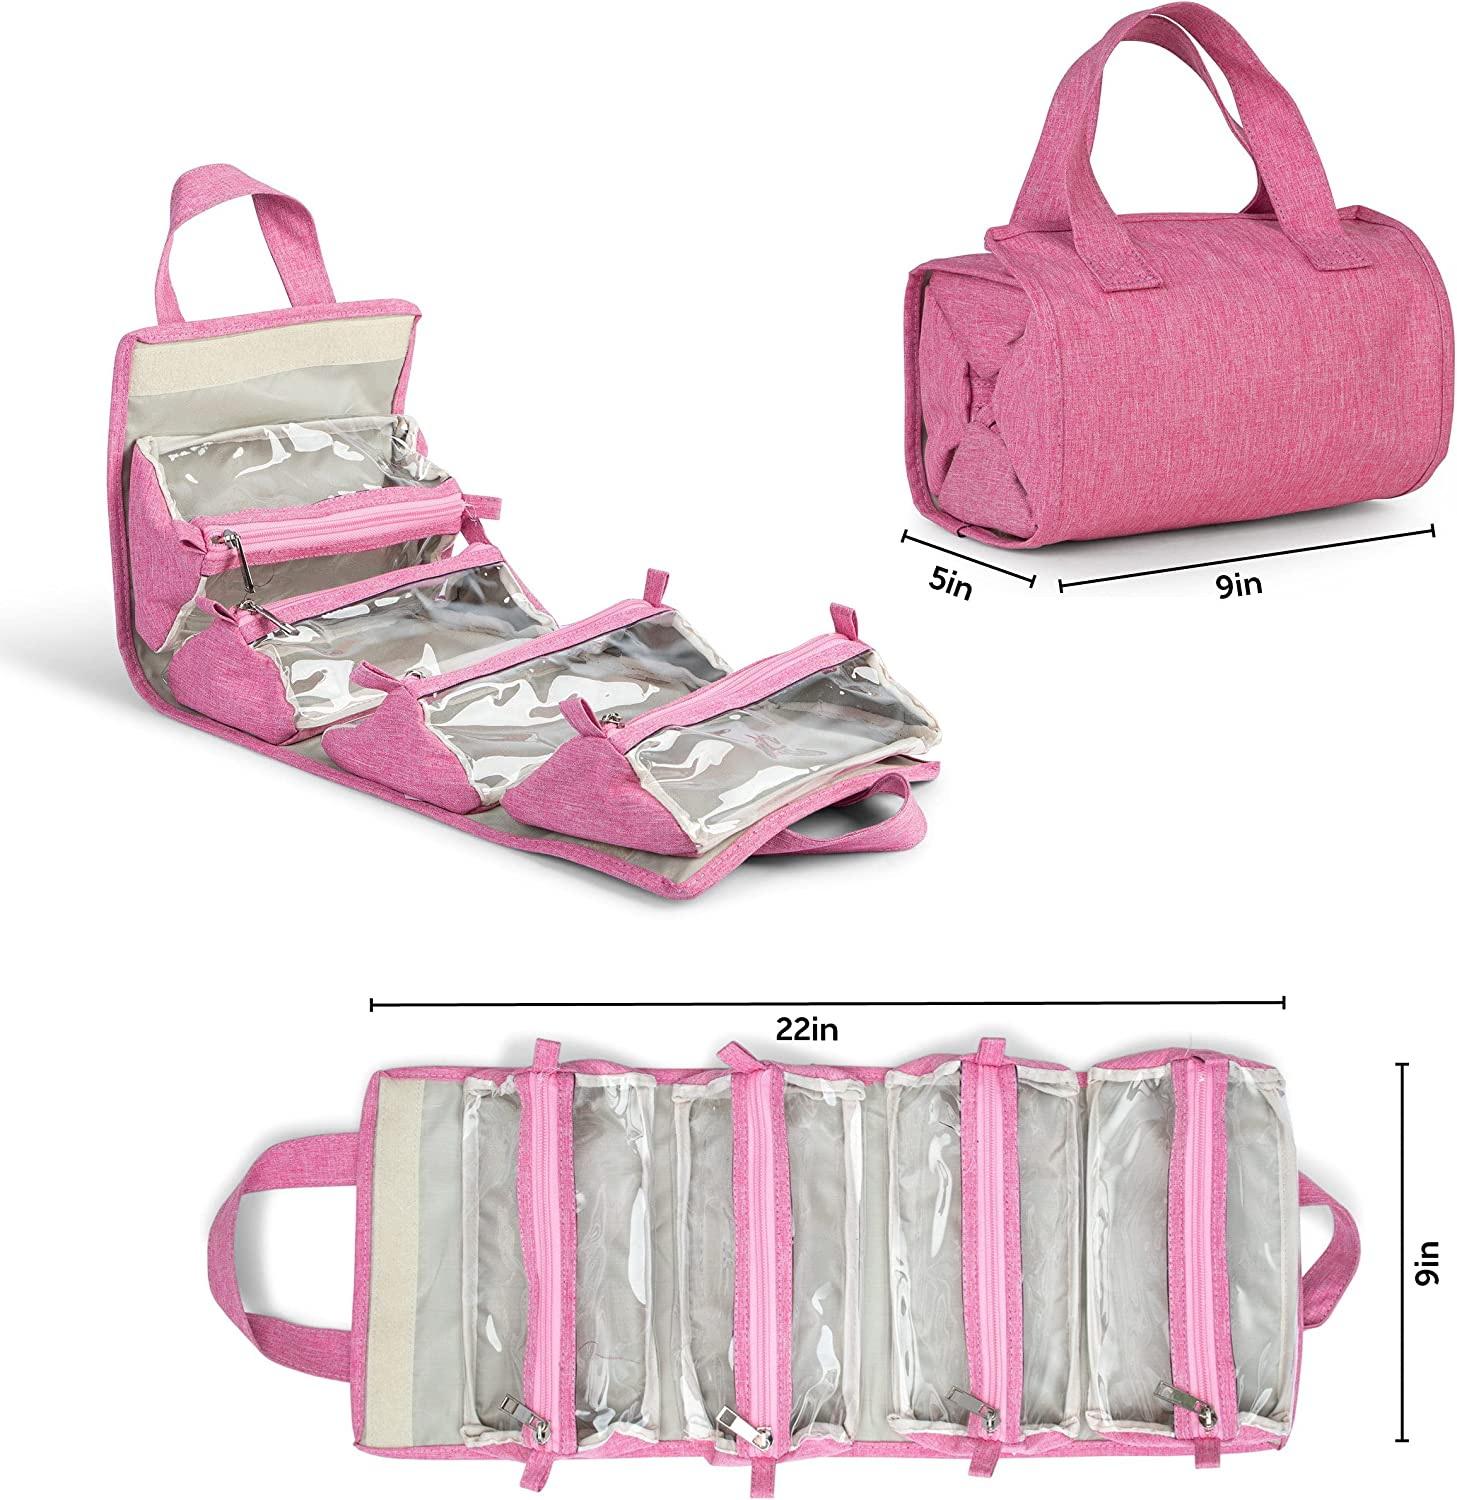 Organizador de almacenamiento de maquillaje enrollado plegable para mujer de viaje rosa soporte de maquillaje enrollable neceser neceser